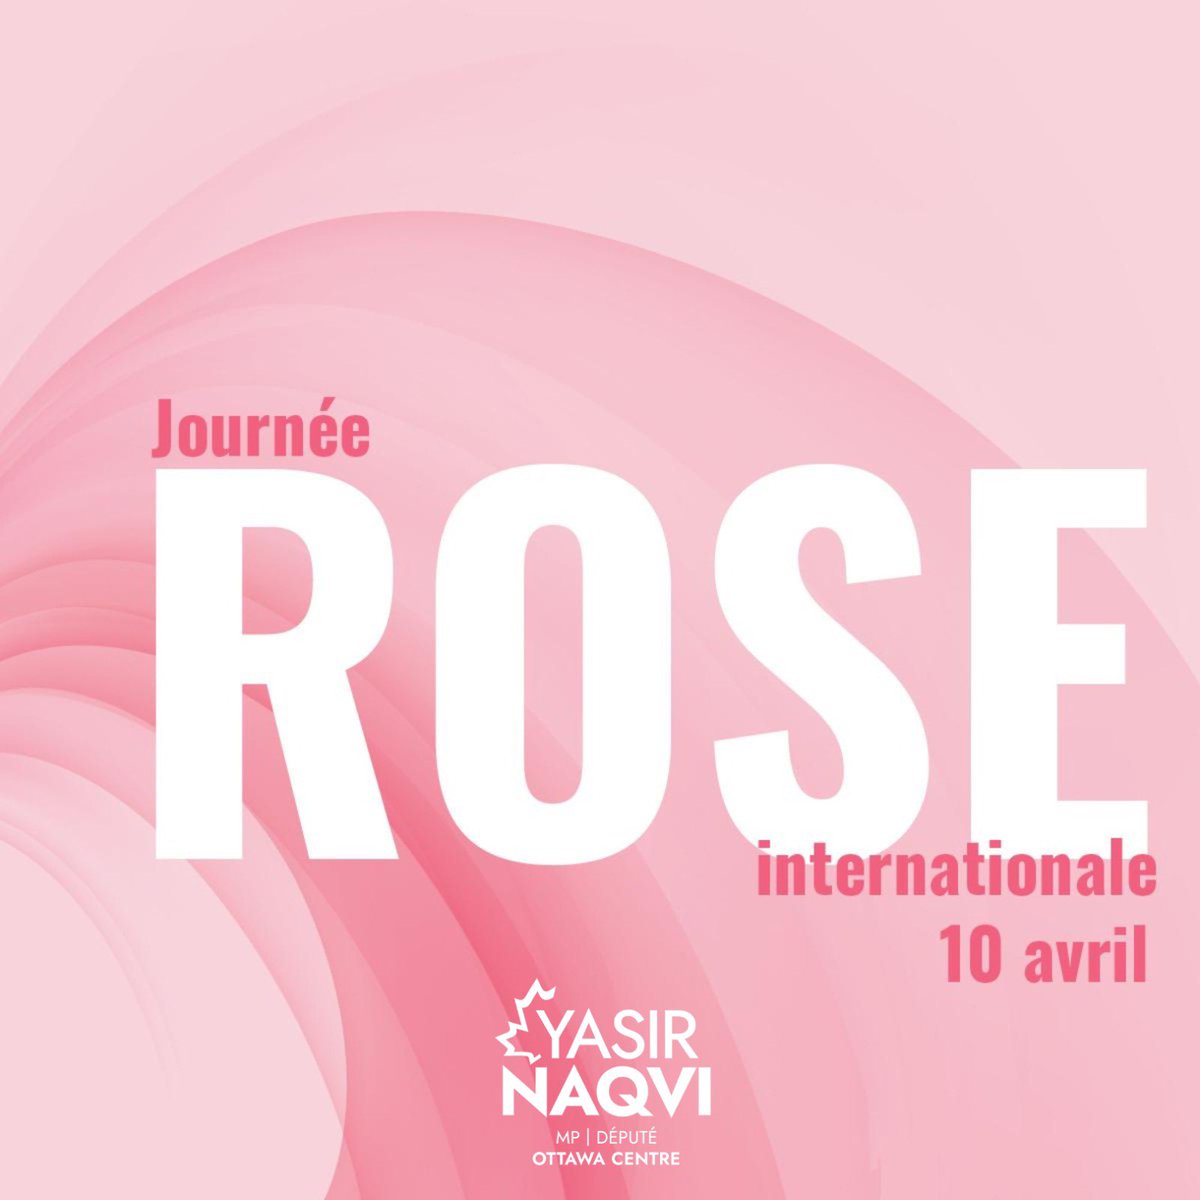 À l'occasion de la Journée rose internationale, nous sommes unis et solidaires de la communauté 2ELGBTQI+. Ensemble, nous nous engageons à lutter contre la discrimination, l'intimidation et la violence, et à célébrer la diversité au quotidien.